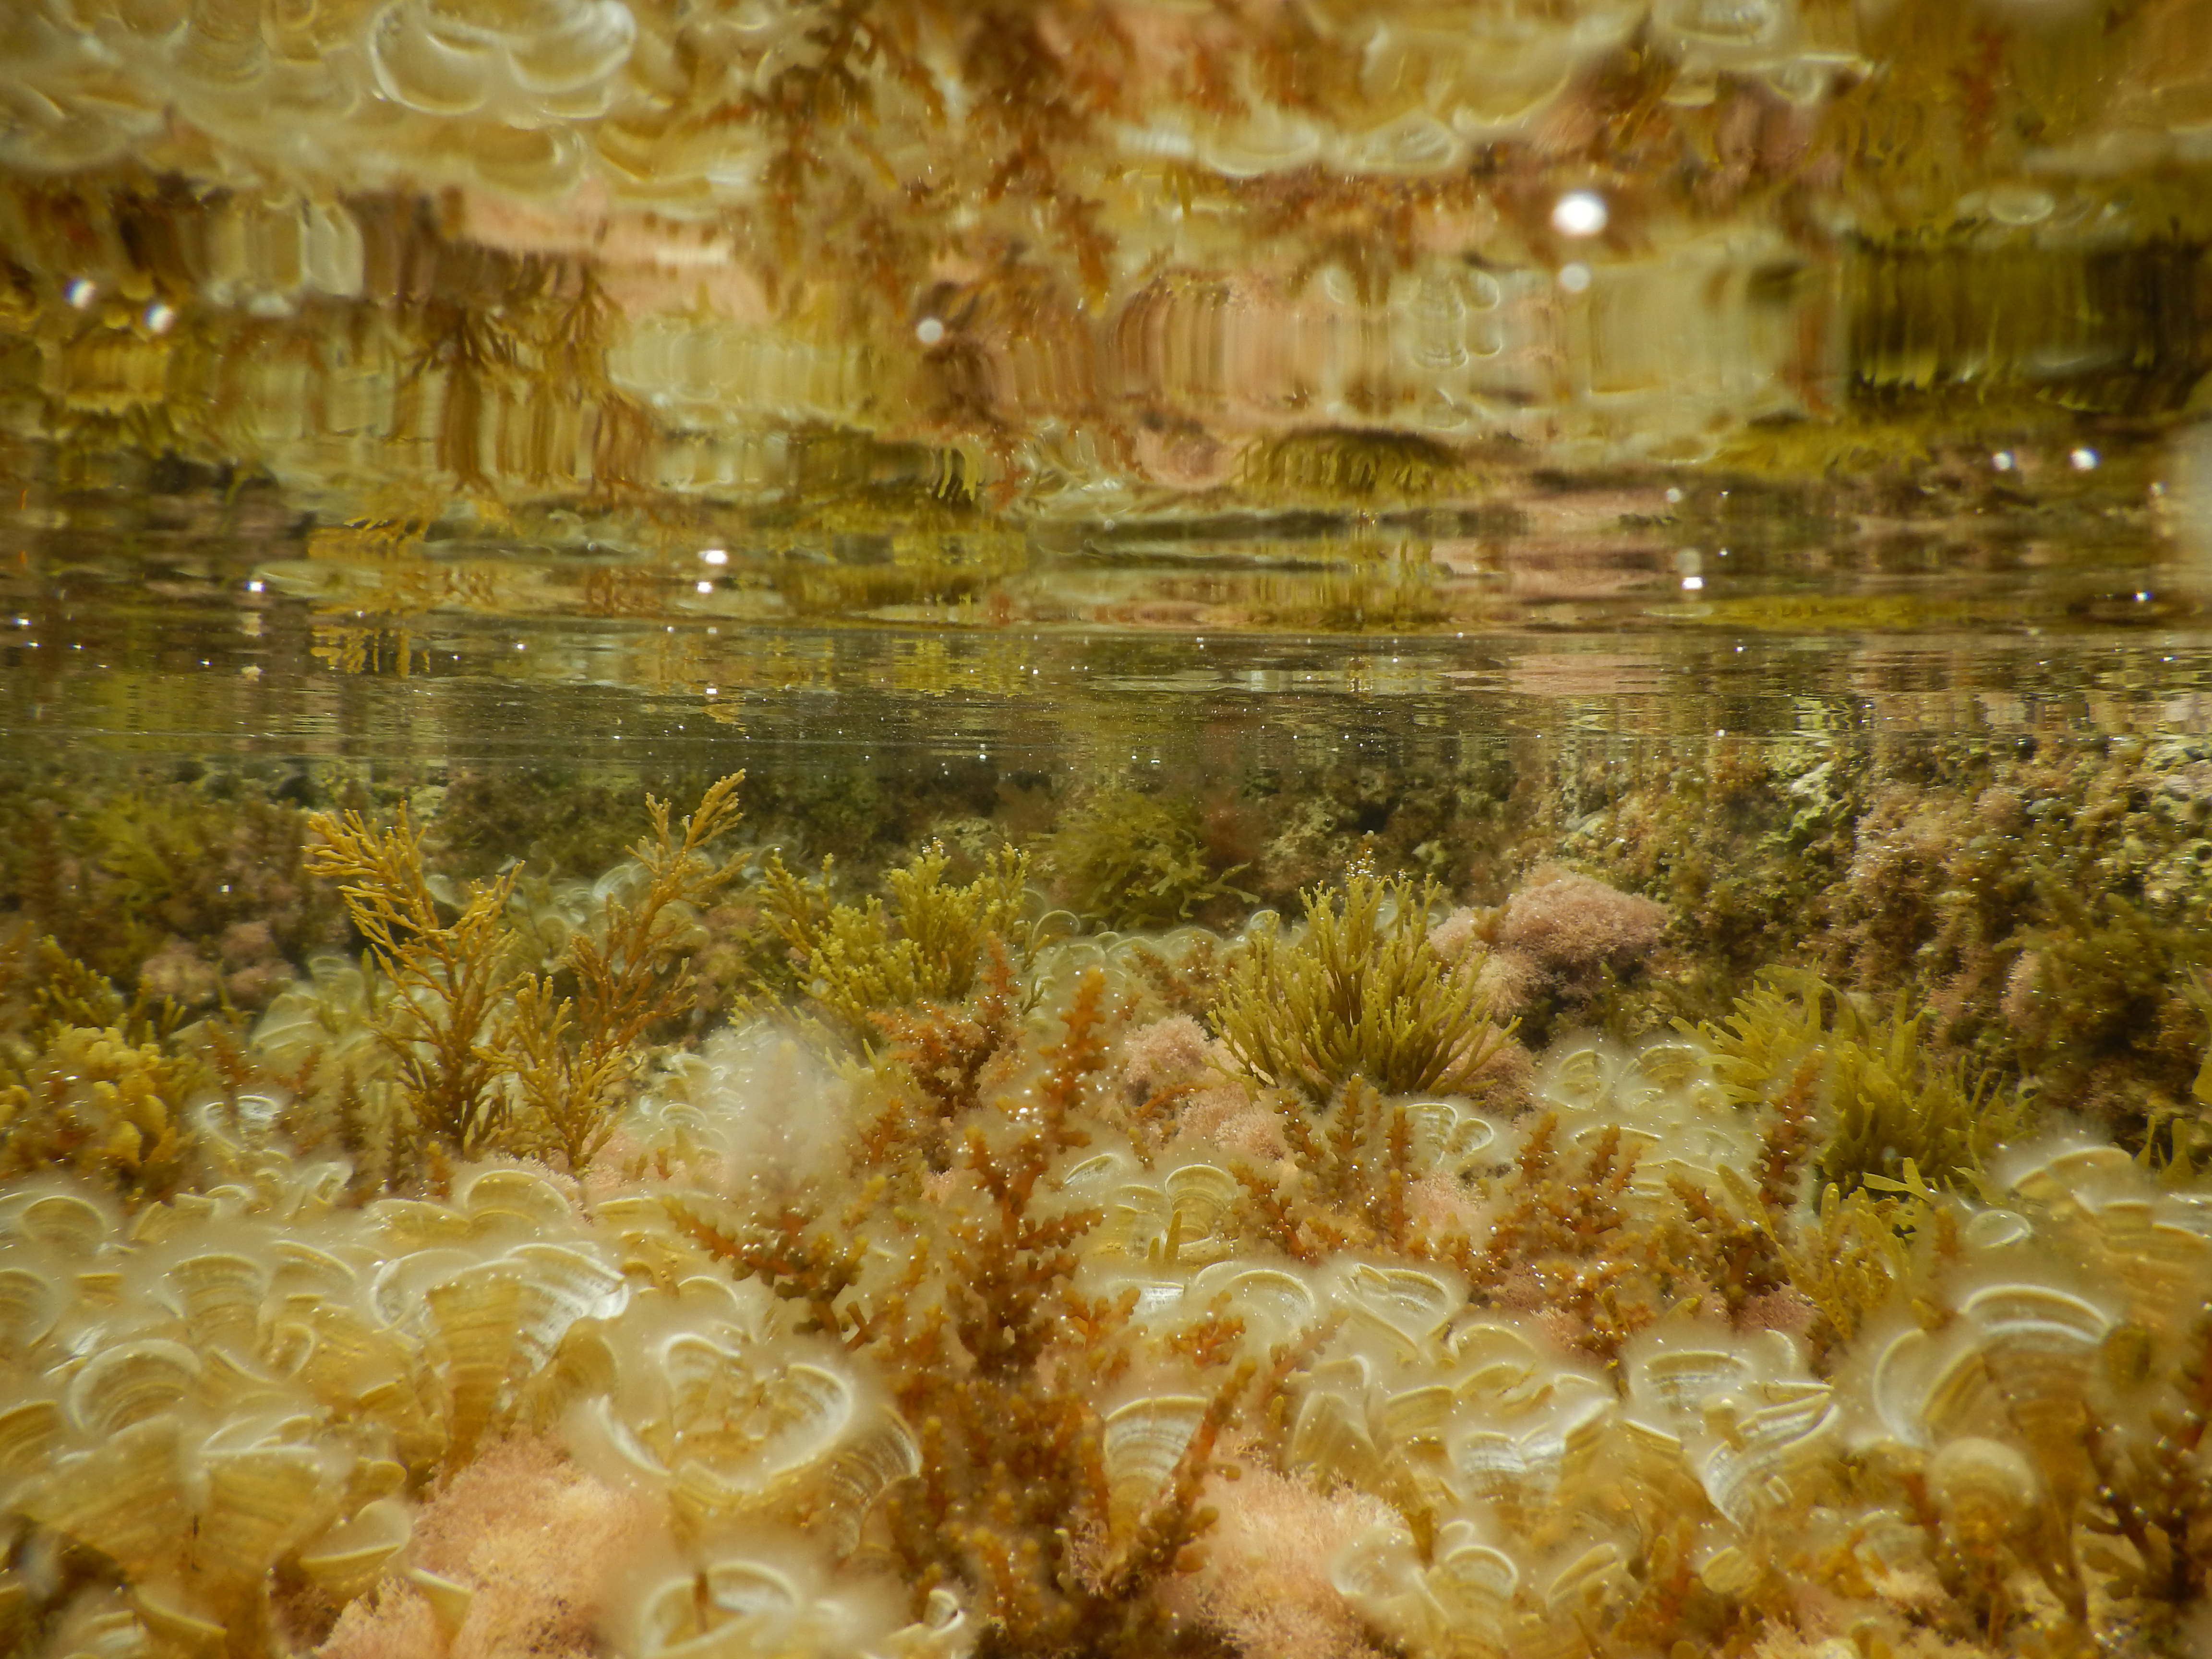 את שטחי הטבלאות הייחודיים מאכלסים מאות מינים של אצות ובעלי חיים, שביניהם מתקיים מארג מורכב של קשרי גומלין. צילום: פרופ' גיל רילוב